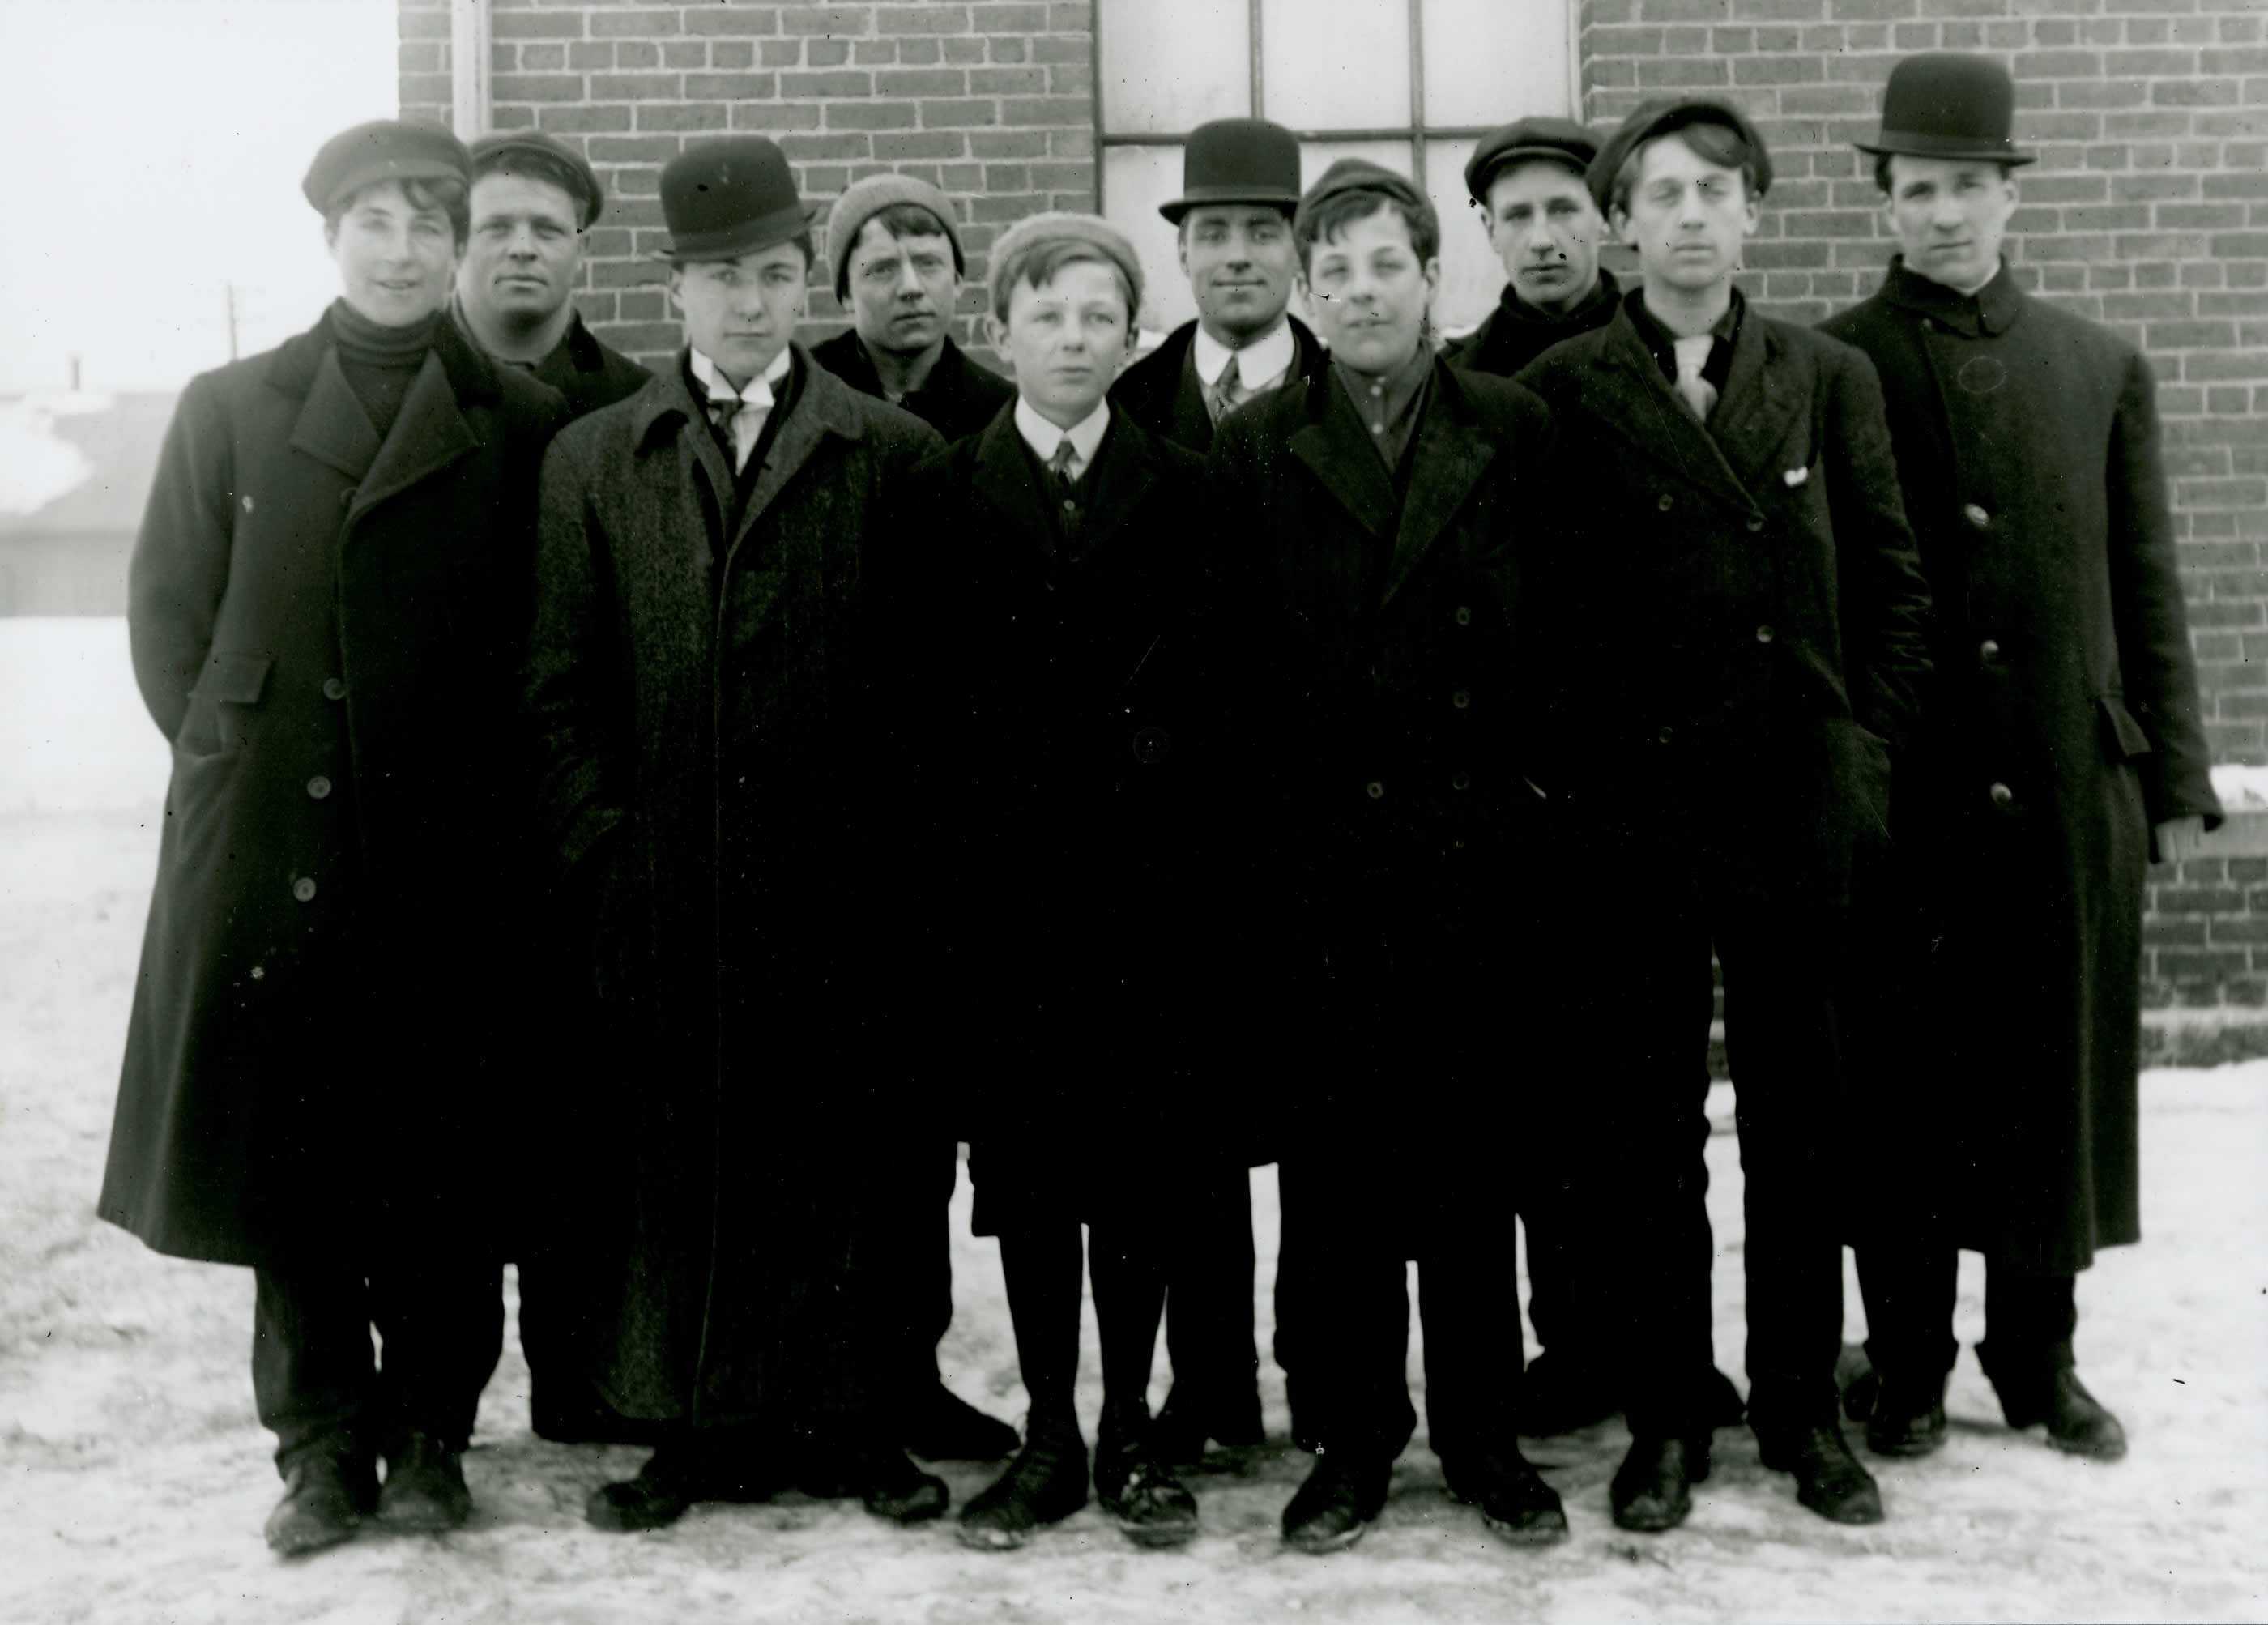 Photographie en noir et blanc - Dix hommes en tenue civile attendent ensemble sur un sol enneigé; la plupart se montrent enthousiastes.